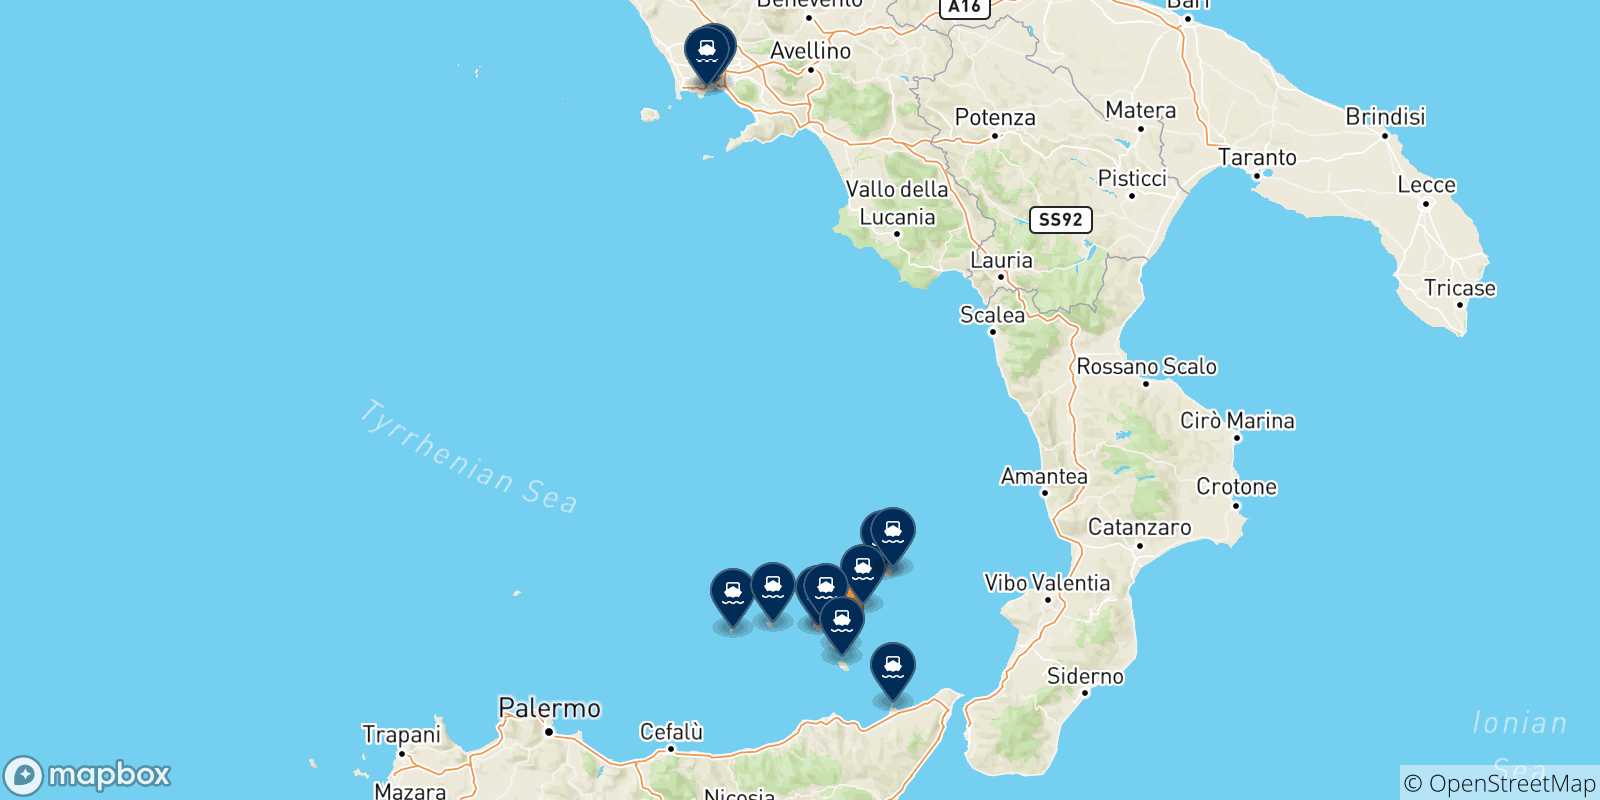 Mappa delle possibili rotte tra Lipari e l'Italia